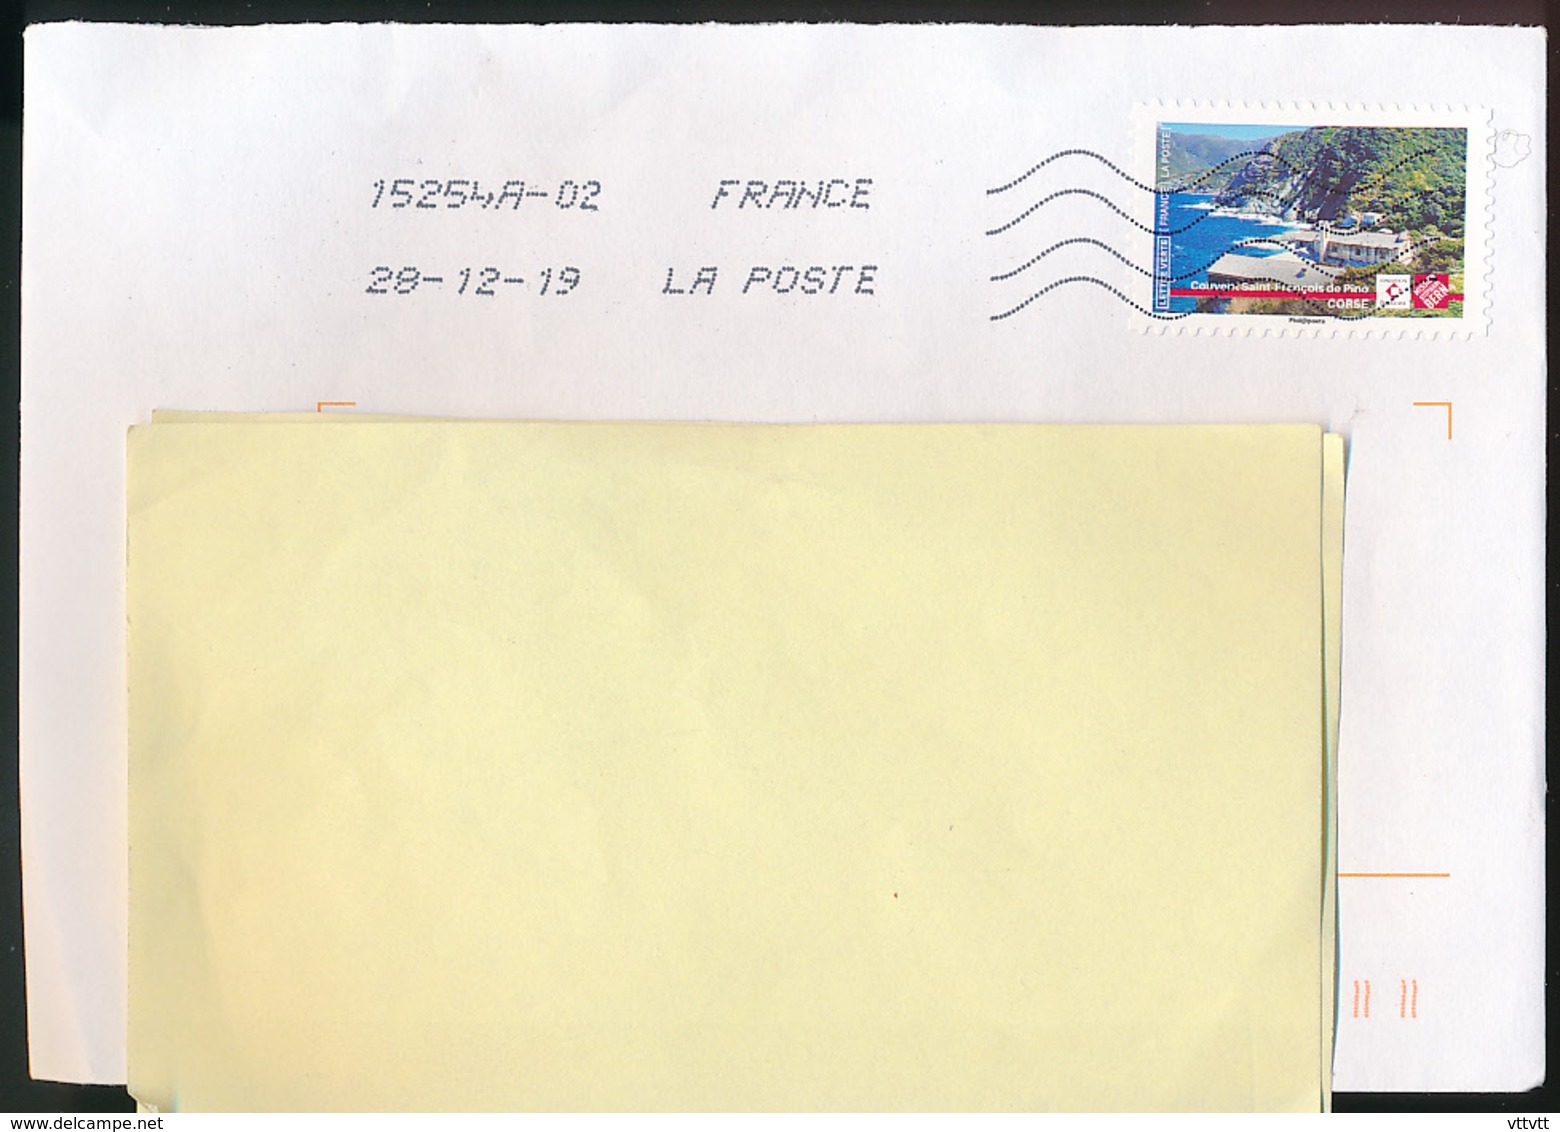 2019 : Timbre Postal Adhésif "Touristique, Couvent Saint-François De Pino, Corse" Seul Sur Lettre - 1961-....